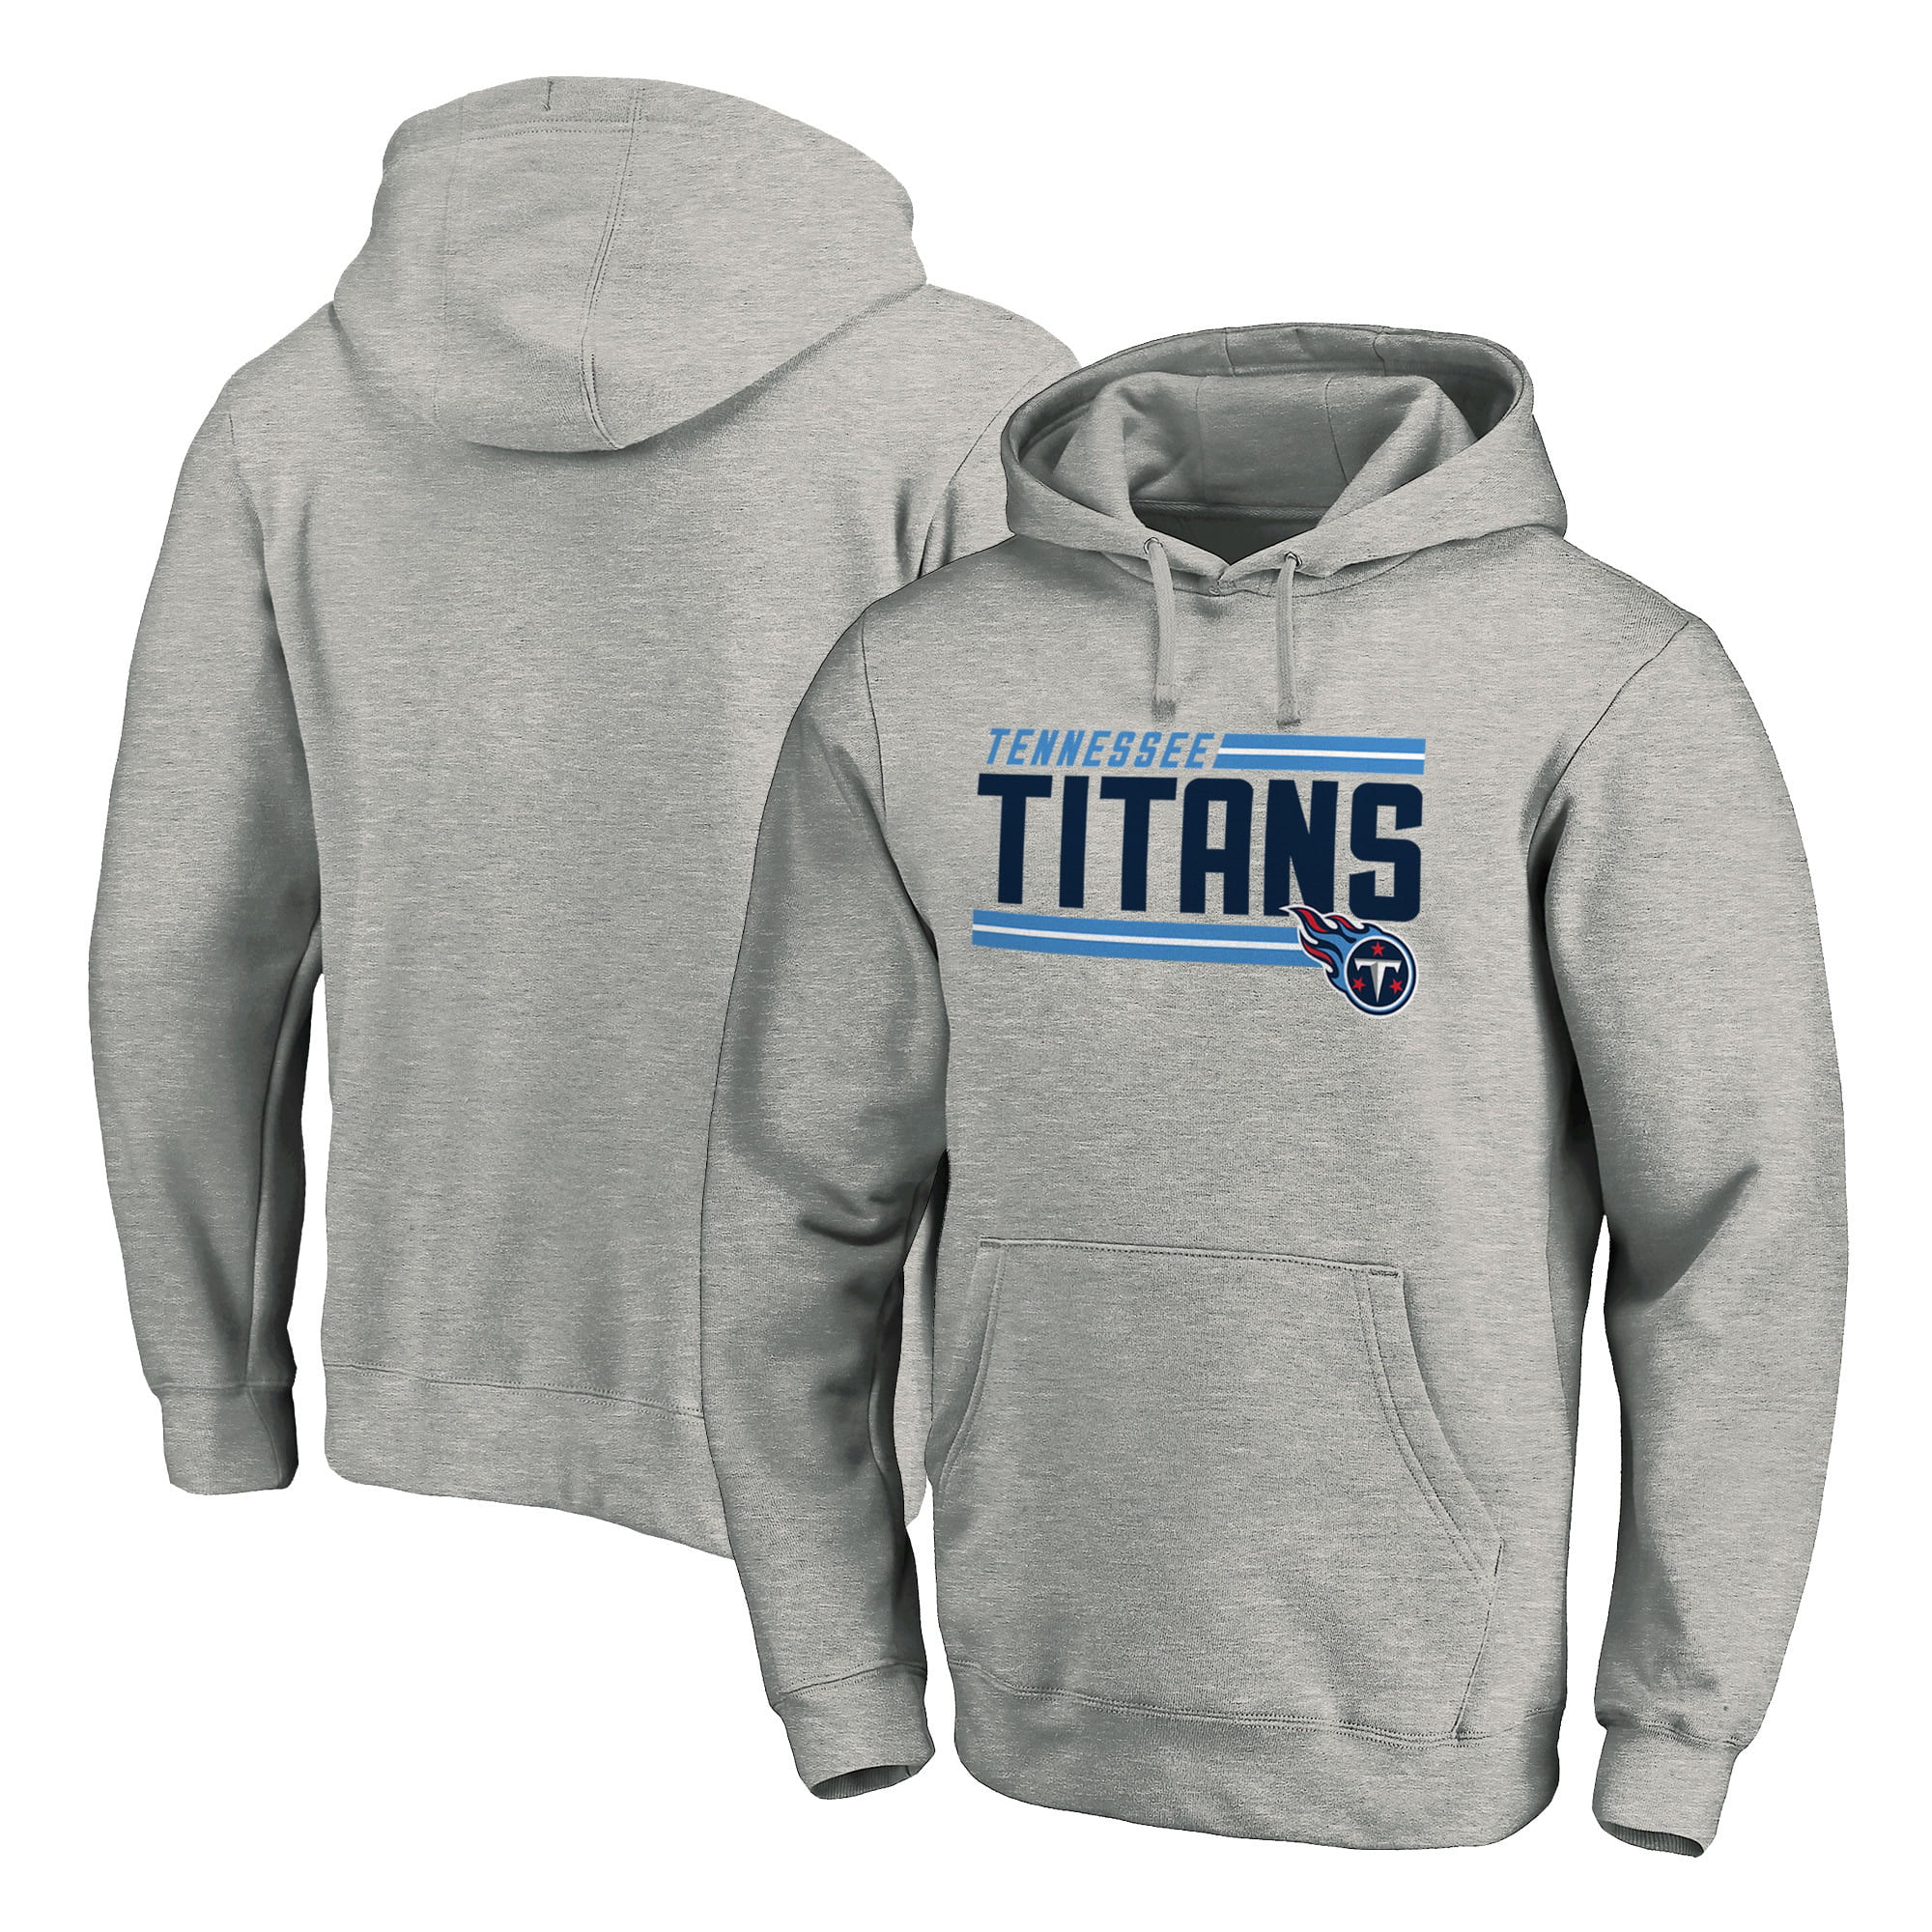 titans hoodie sweatshirts